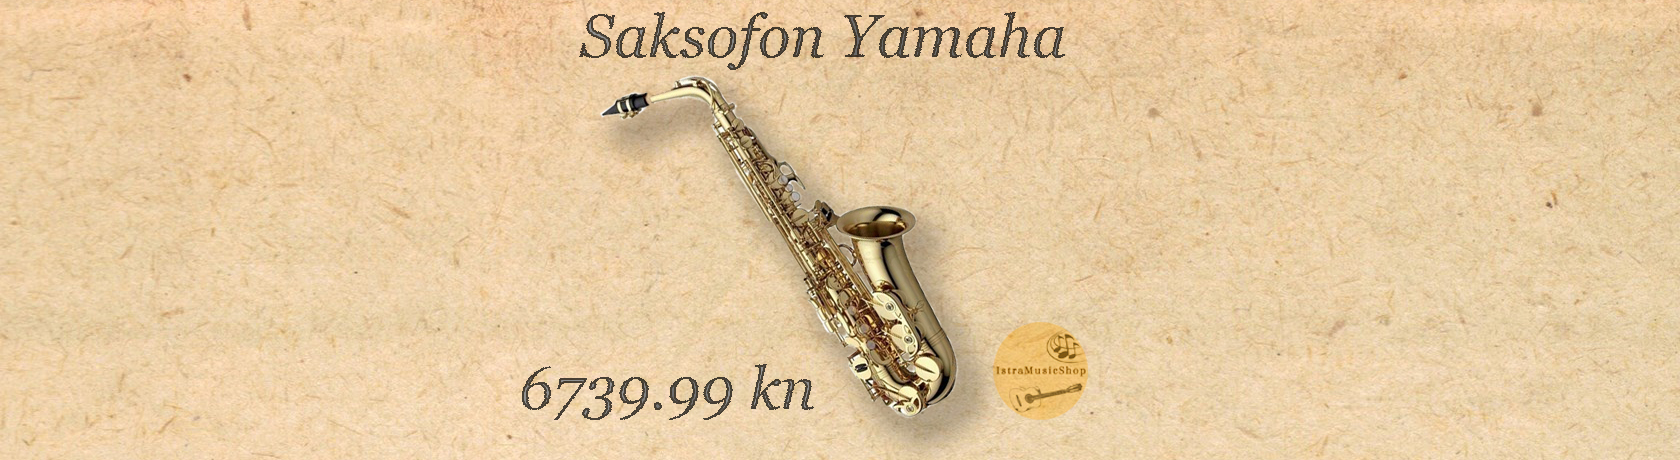 Yamaha saksofon